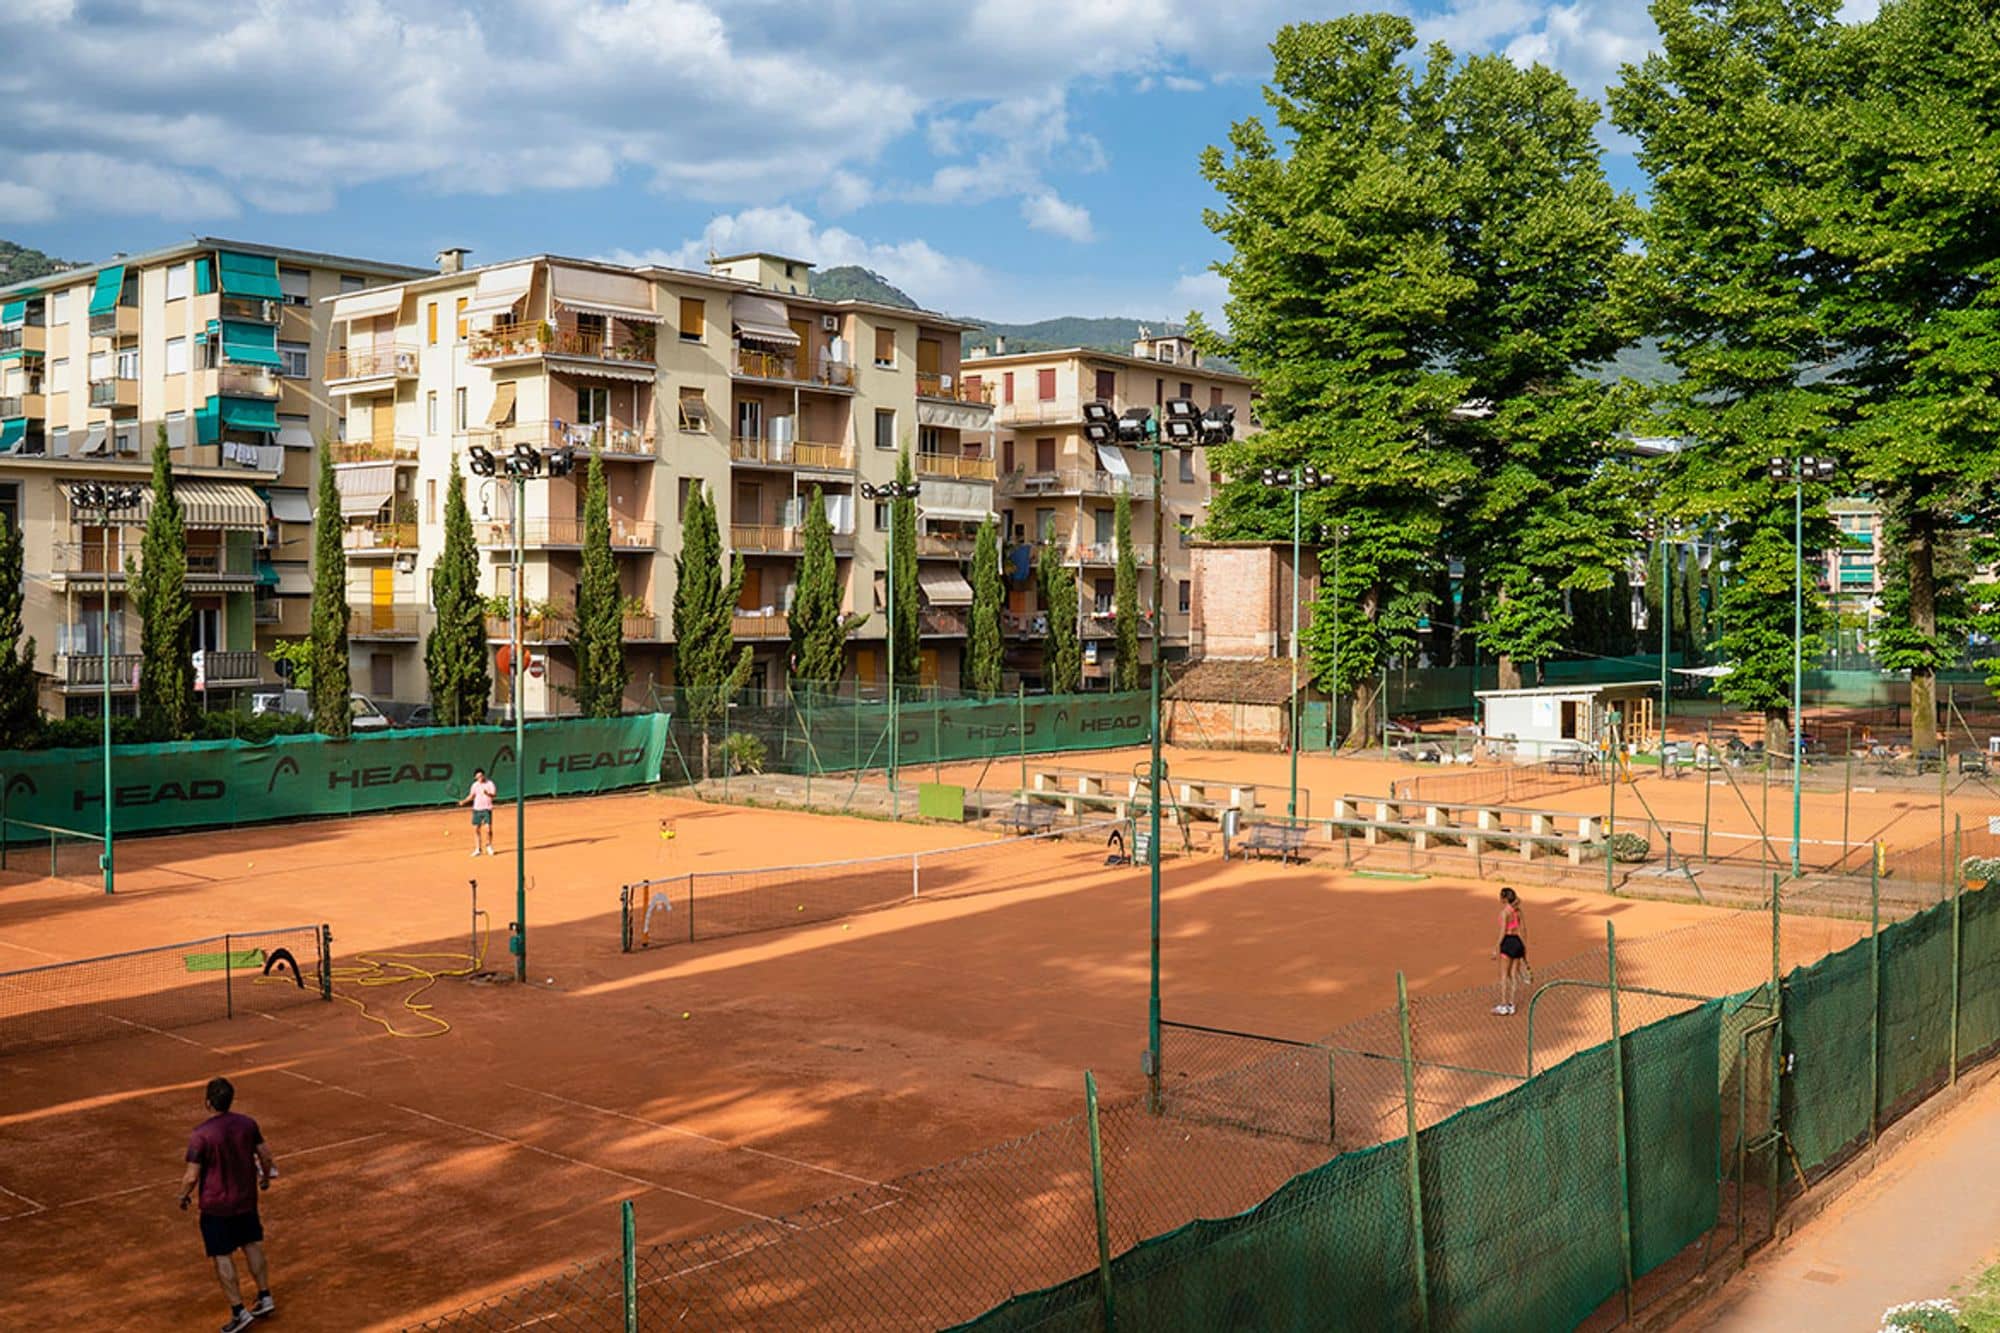 Tennis courts, le fotografie